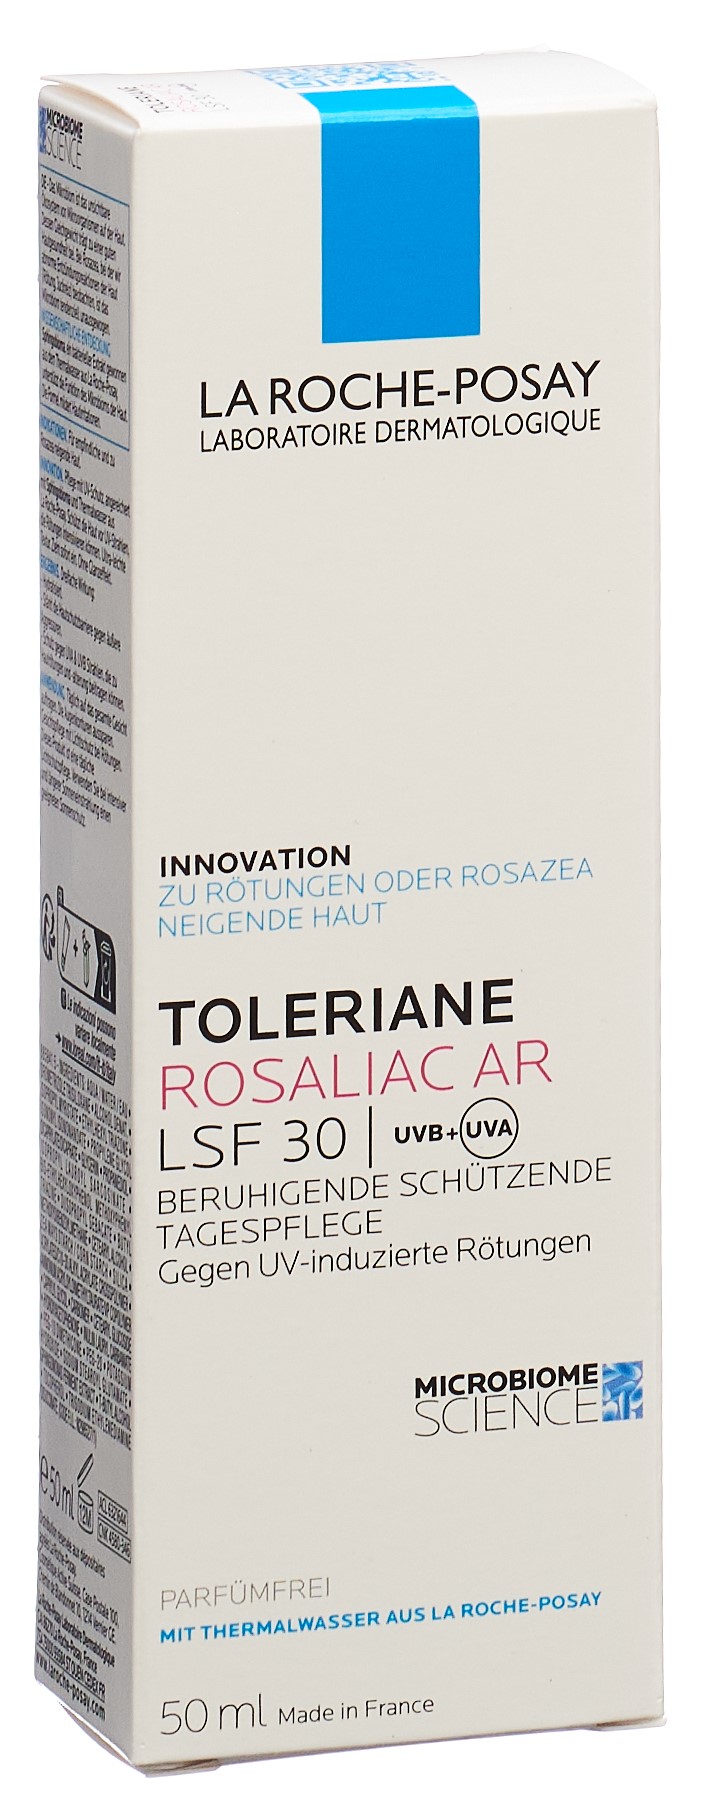 ROCHE POSAY Toleriane Rosaliac AR Pfl LSF30 50 ml